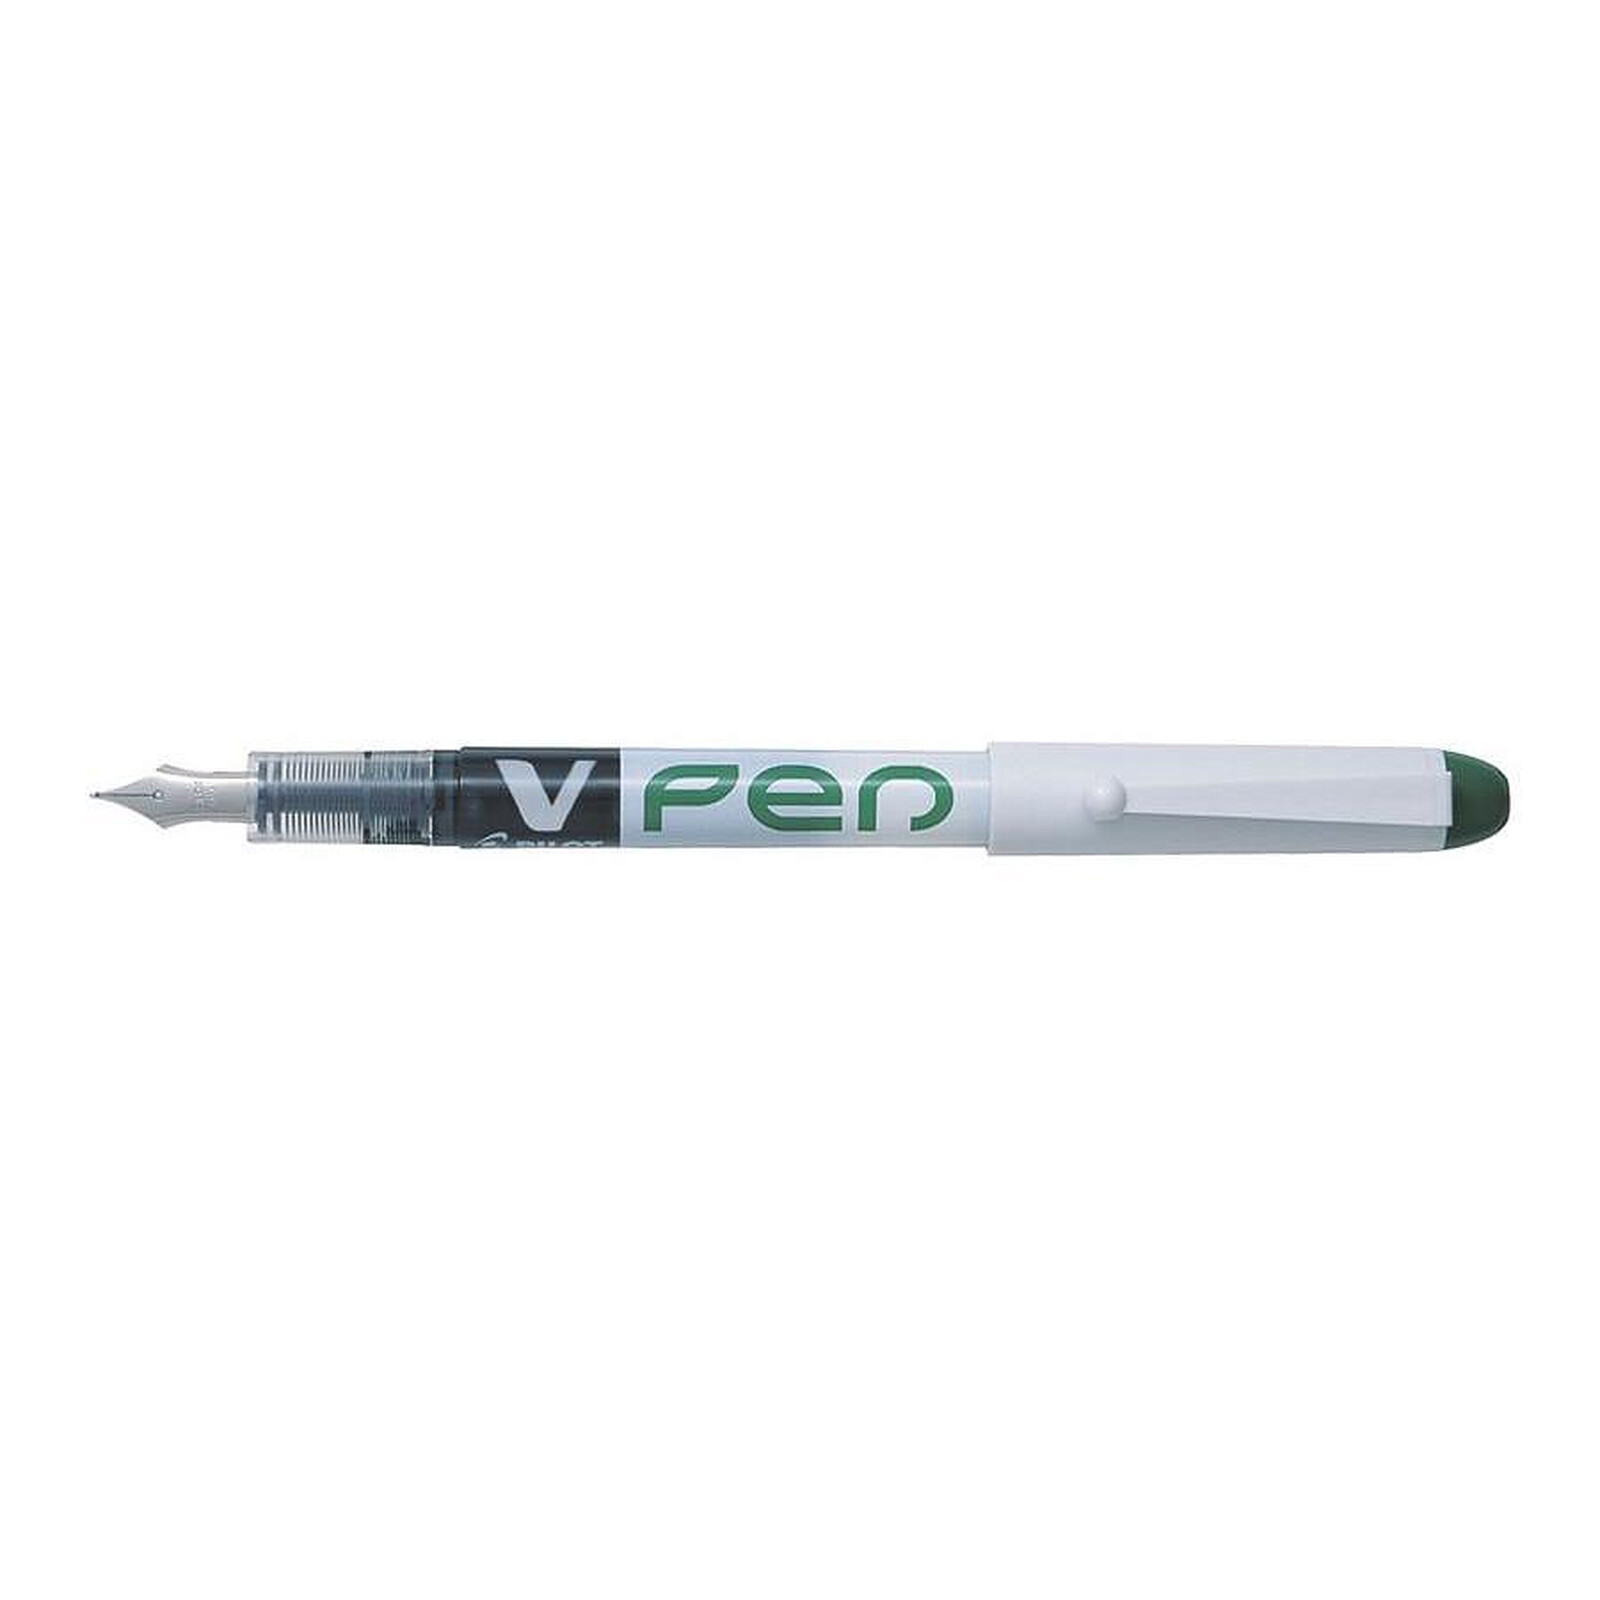 Stylo à Encre Gel Effaçable - Erasable Pen SPACE